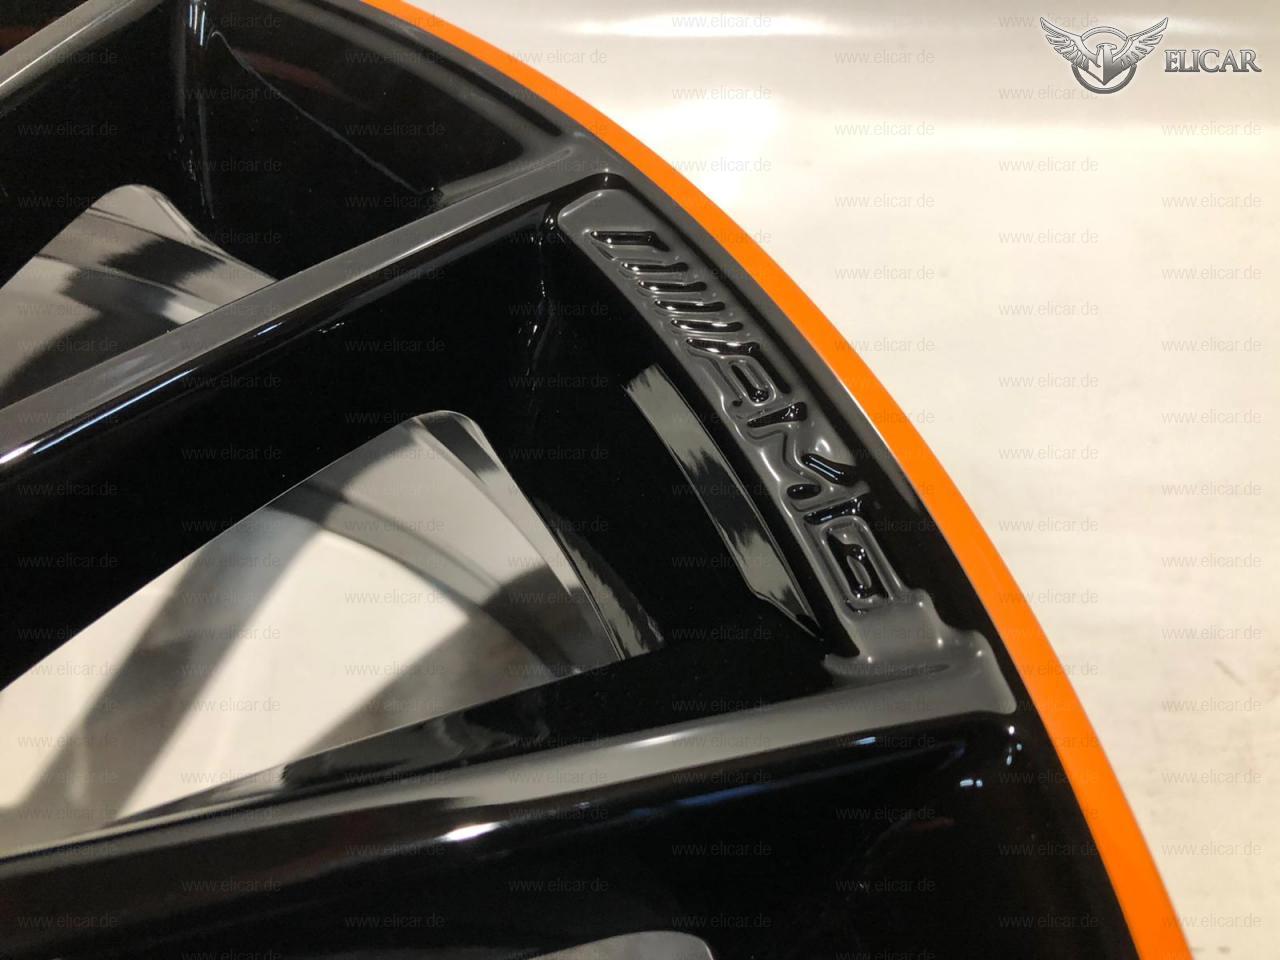 Alufelge AMG / Außenhorn Orange     für Mercedes-Benz 